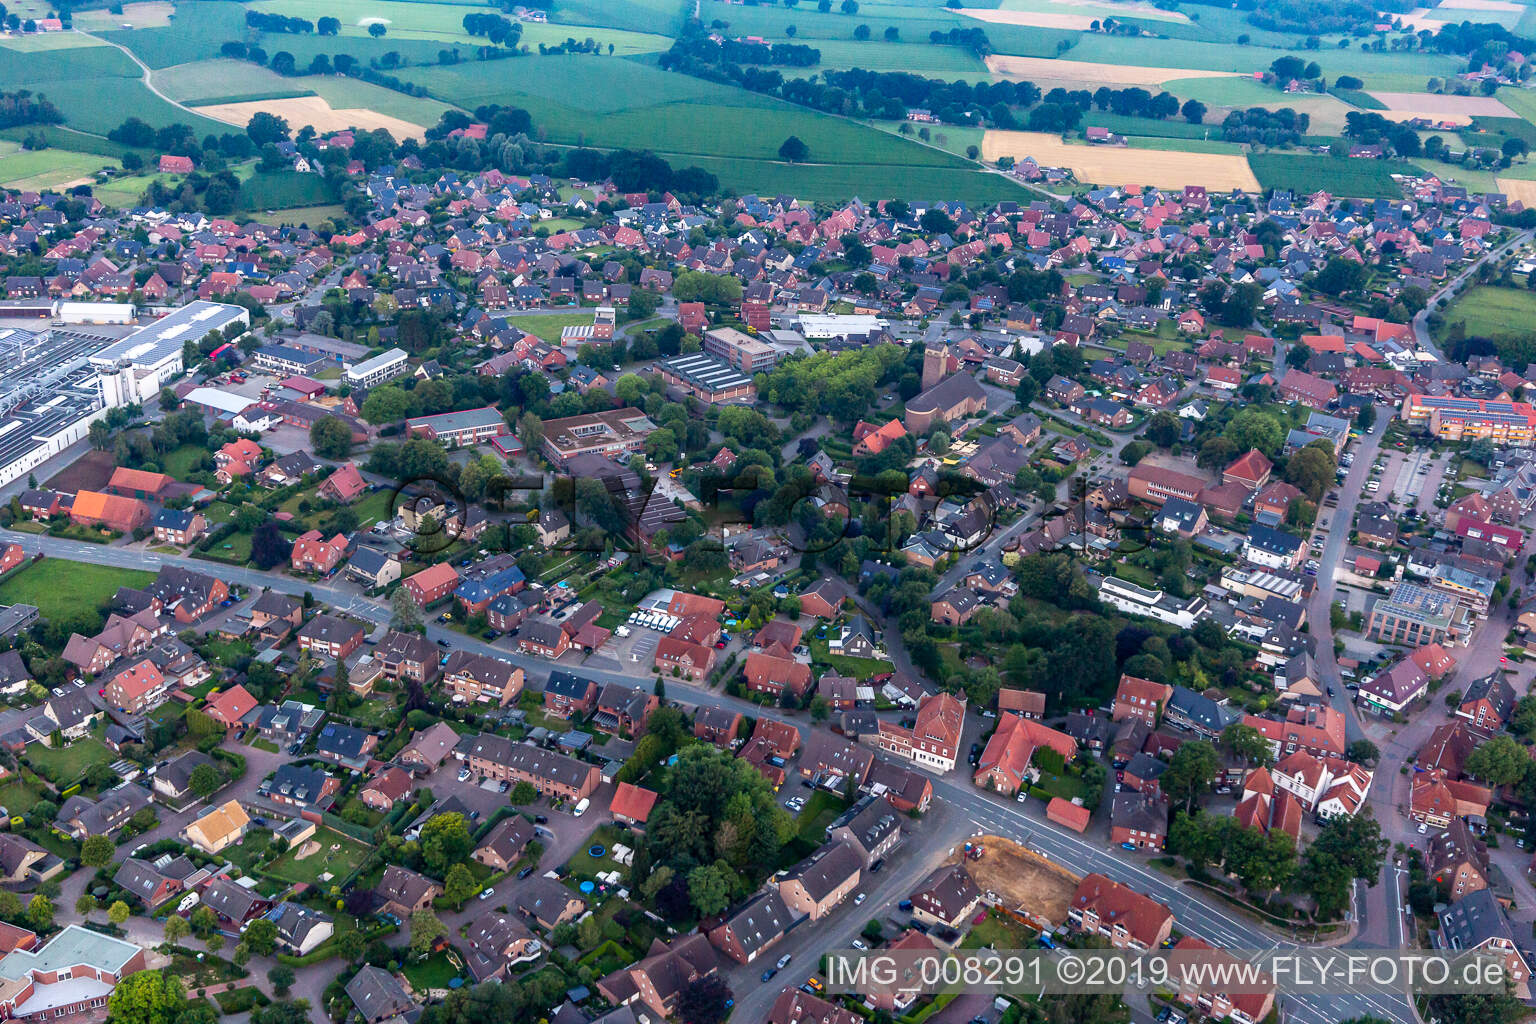 Aerial view of Groß Reken in the state North Rhine-Westphalia, Germany